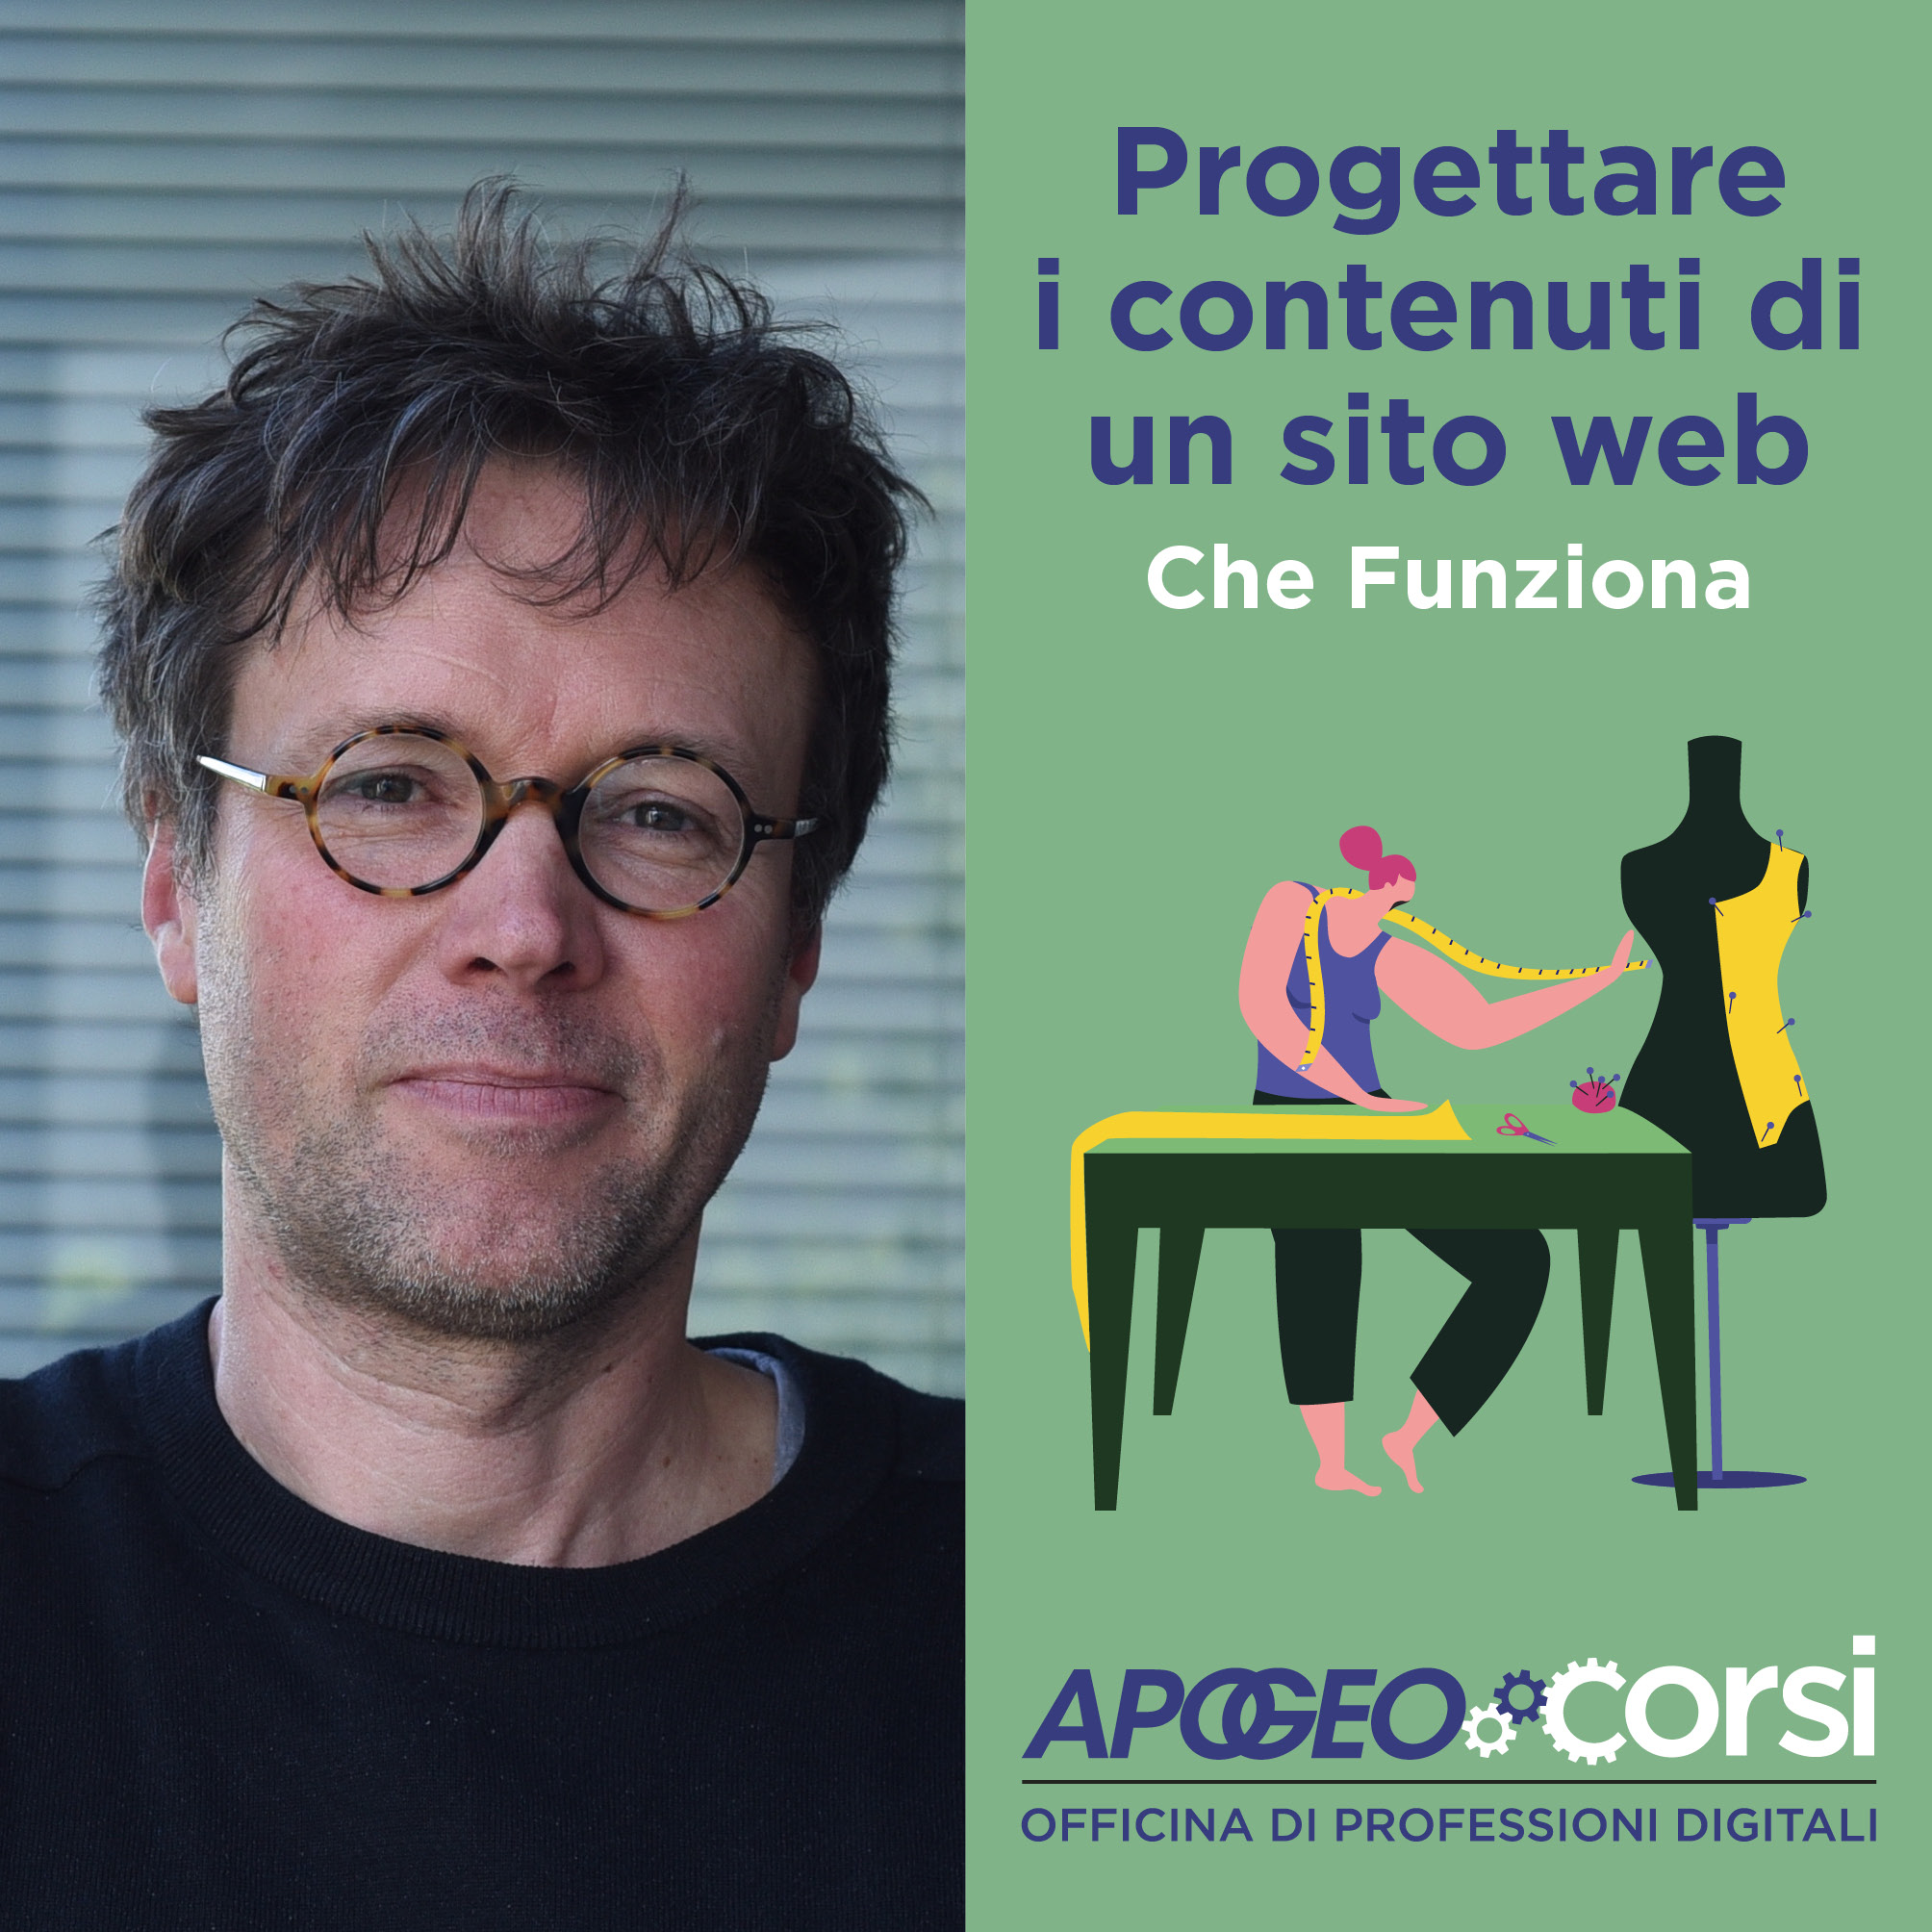 Progettare i contenuti di un sito web - Che-Funziona, con Nicola Bonora